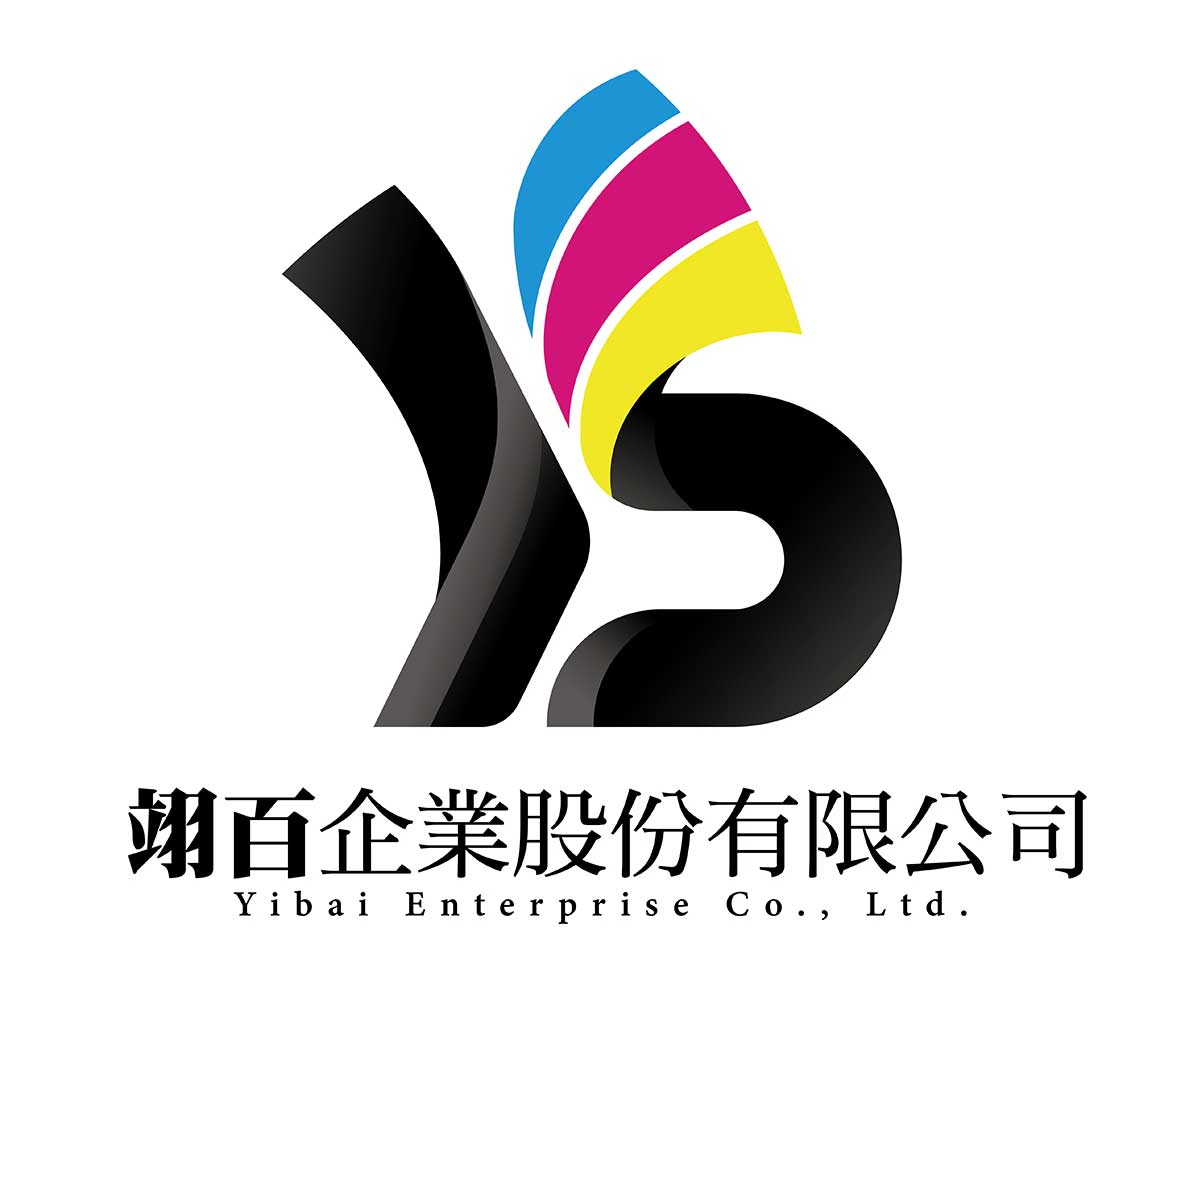 翊百企業股份有限公司Logo